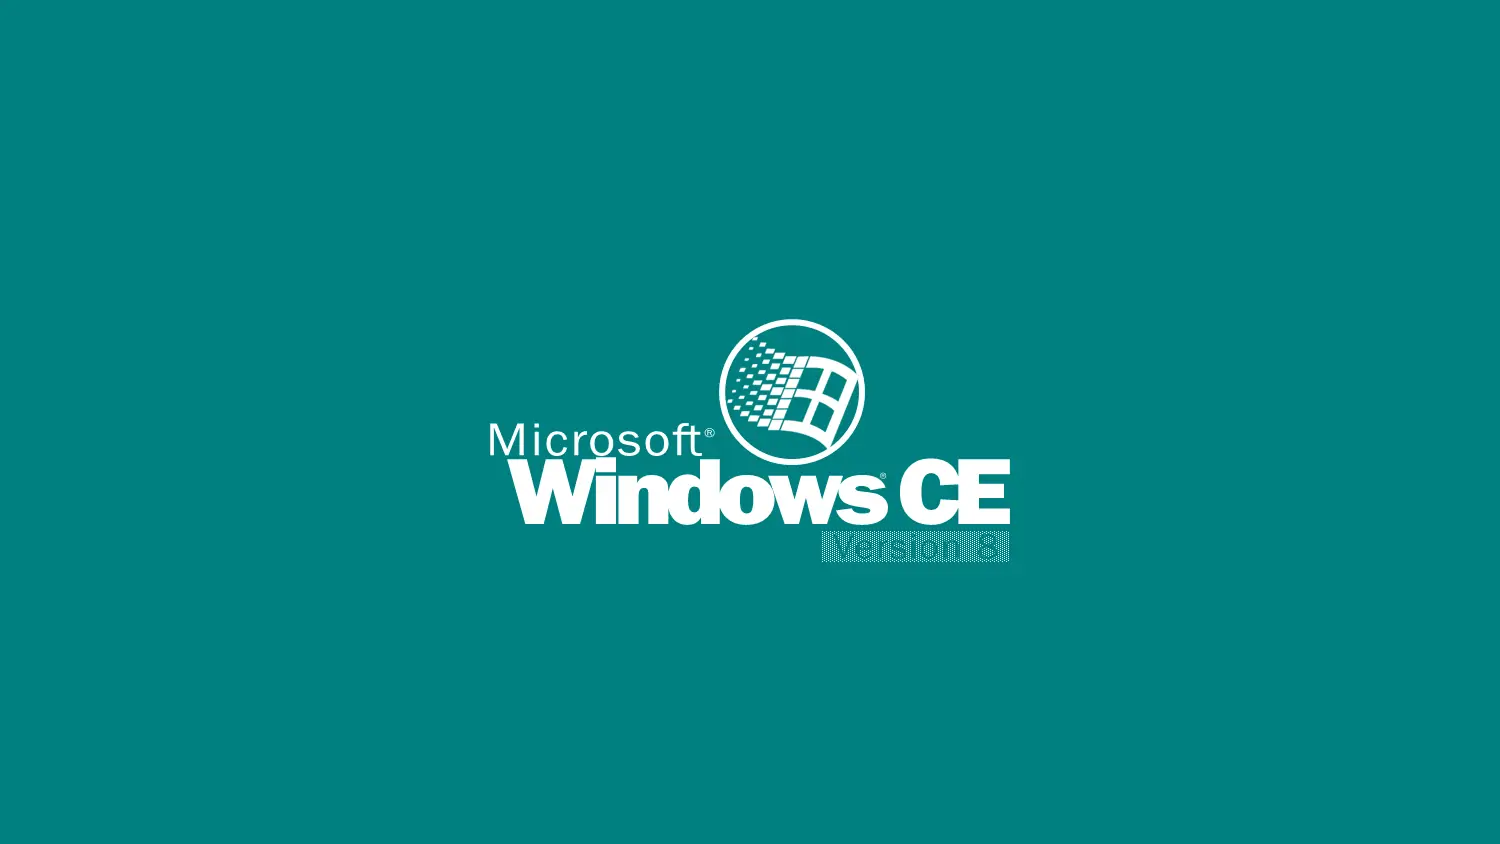 آشنایی با Windows CE و تفاوت آن با ویندوزهای معمولی